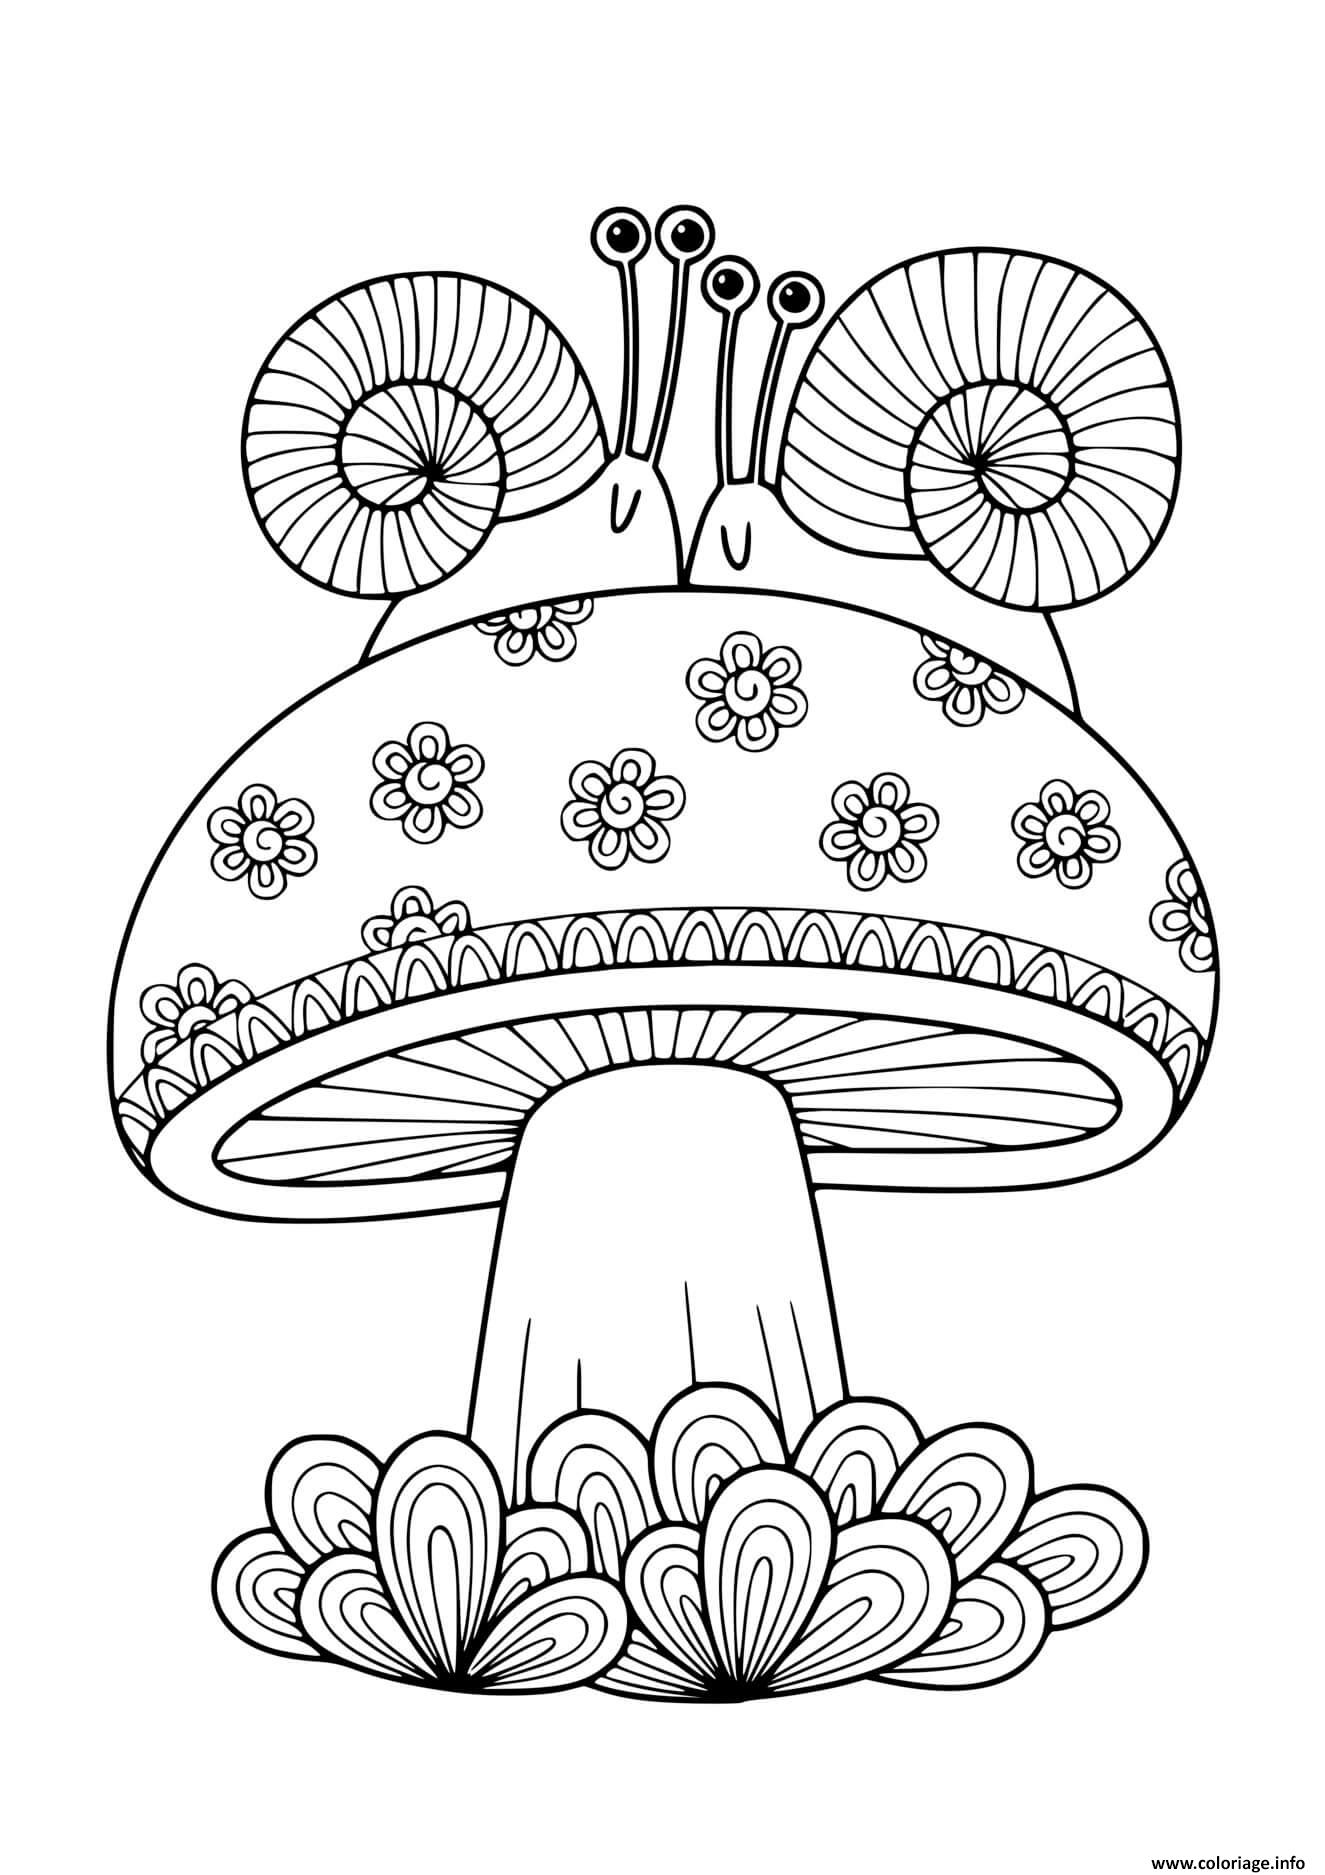 Dessin champignon adulte avec deux escargots Coloriage Gratuit à Imprimer